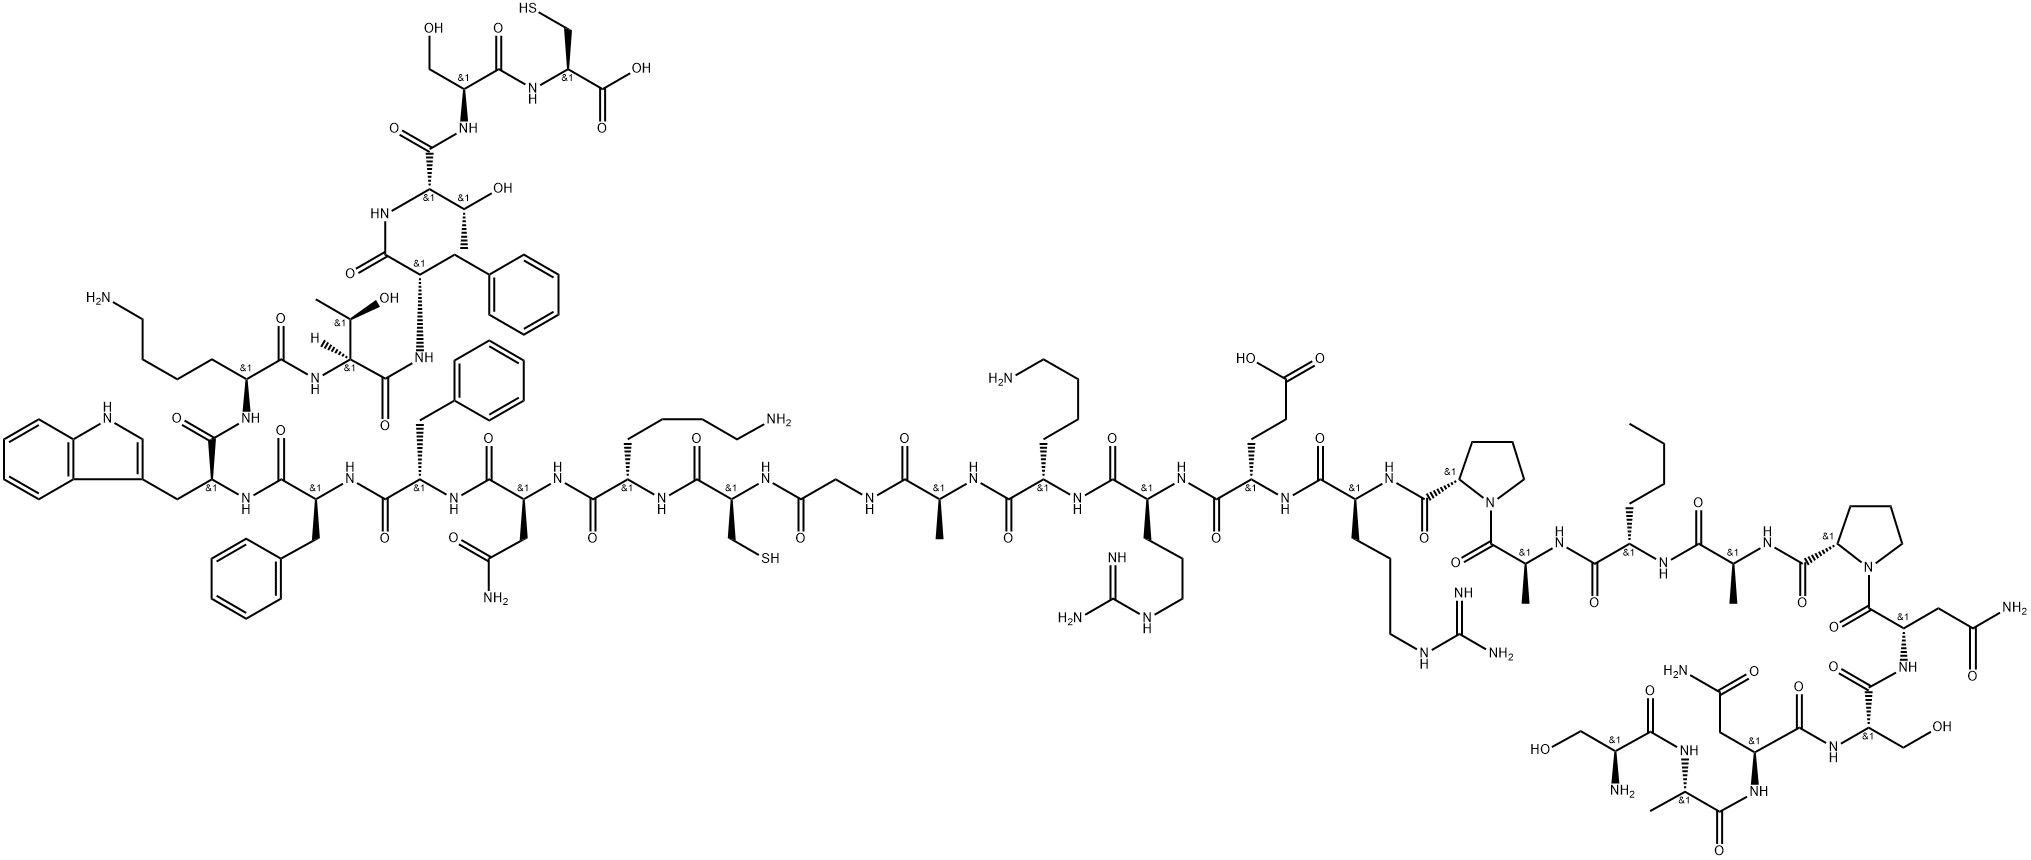 somatostatin 28, Nle(8)- Structure